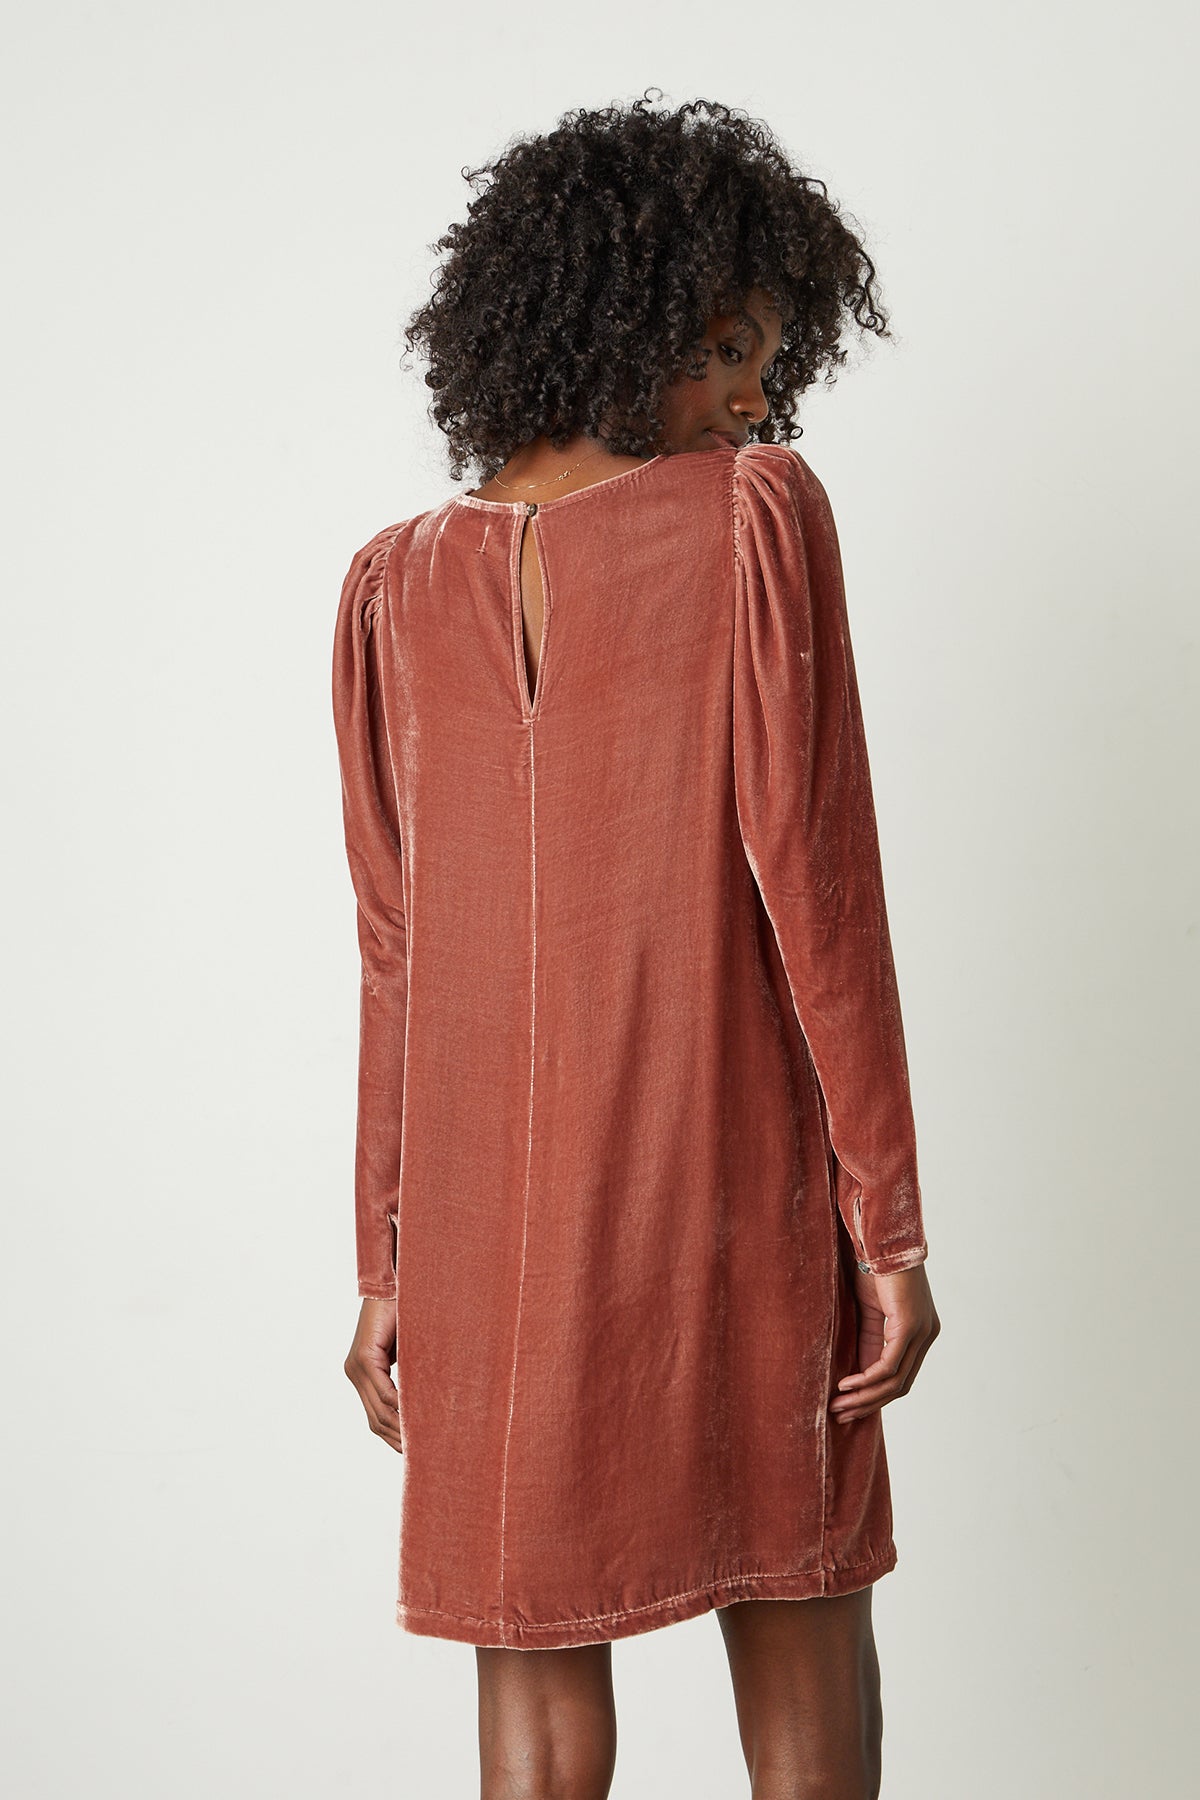 Aggie Silk Velvet Dress in rosegold back-25668240801985